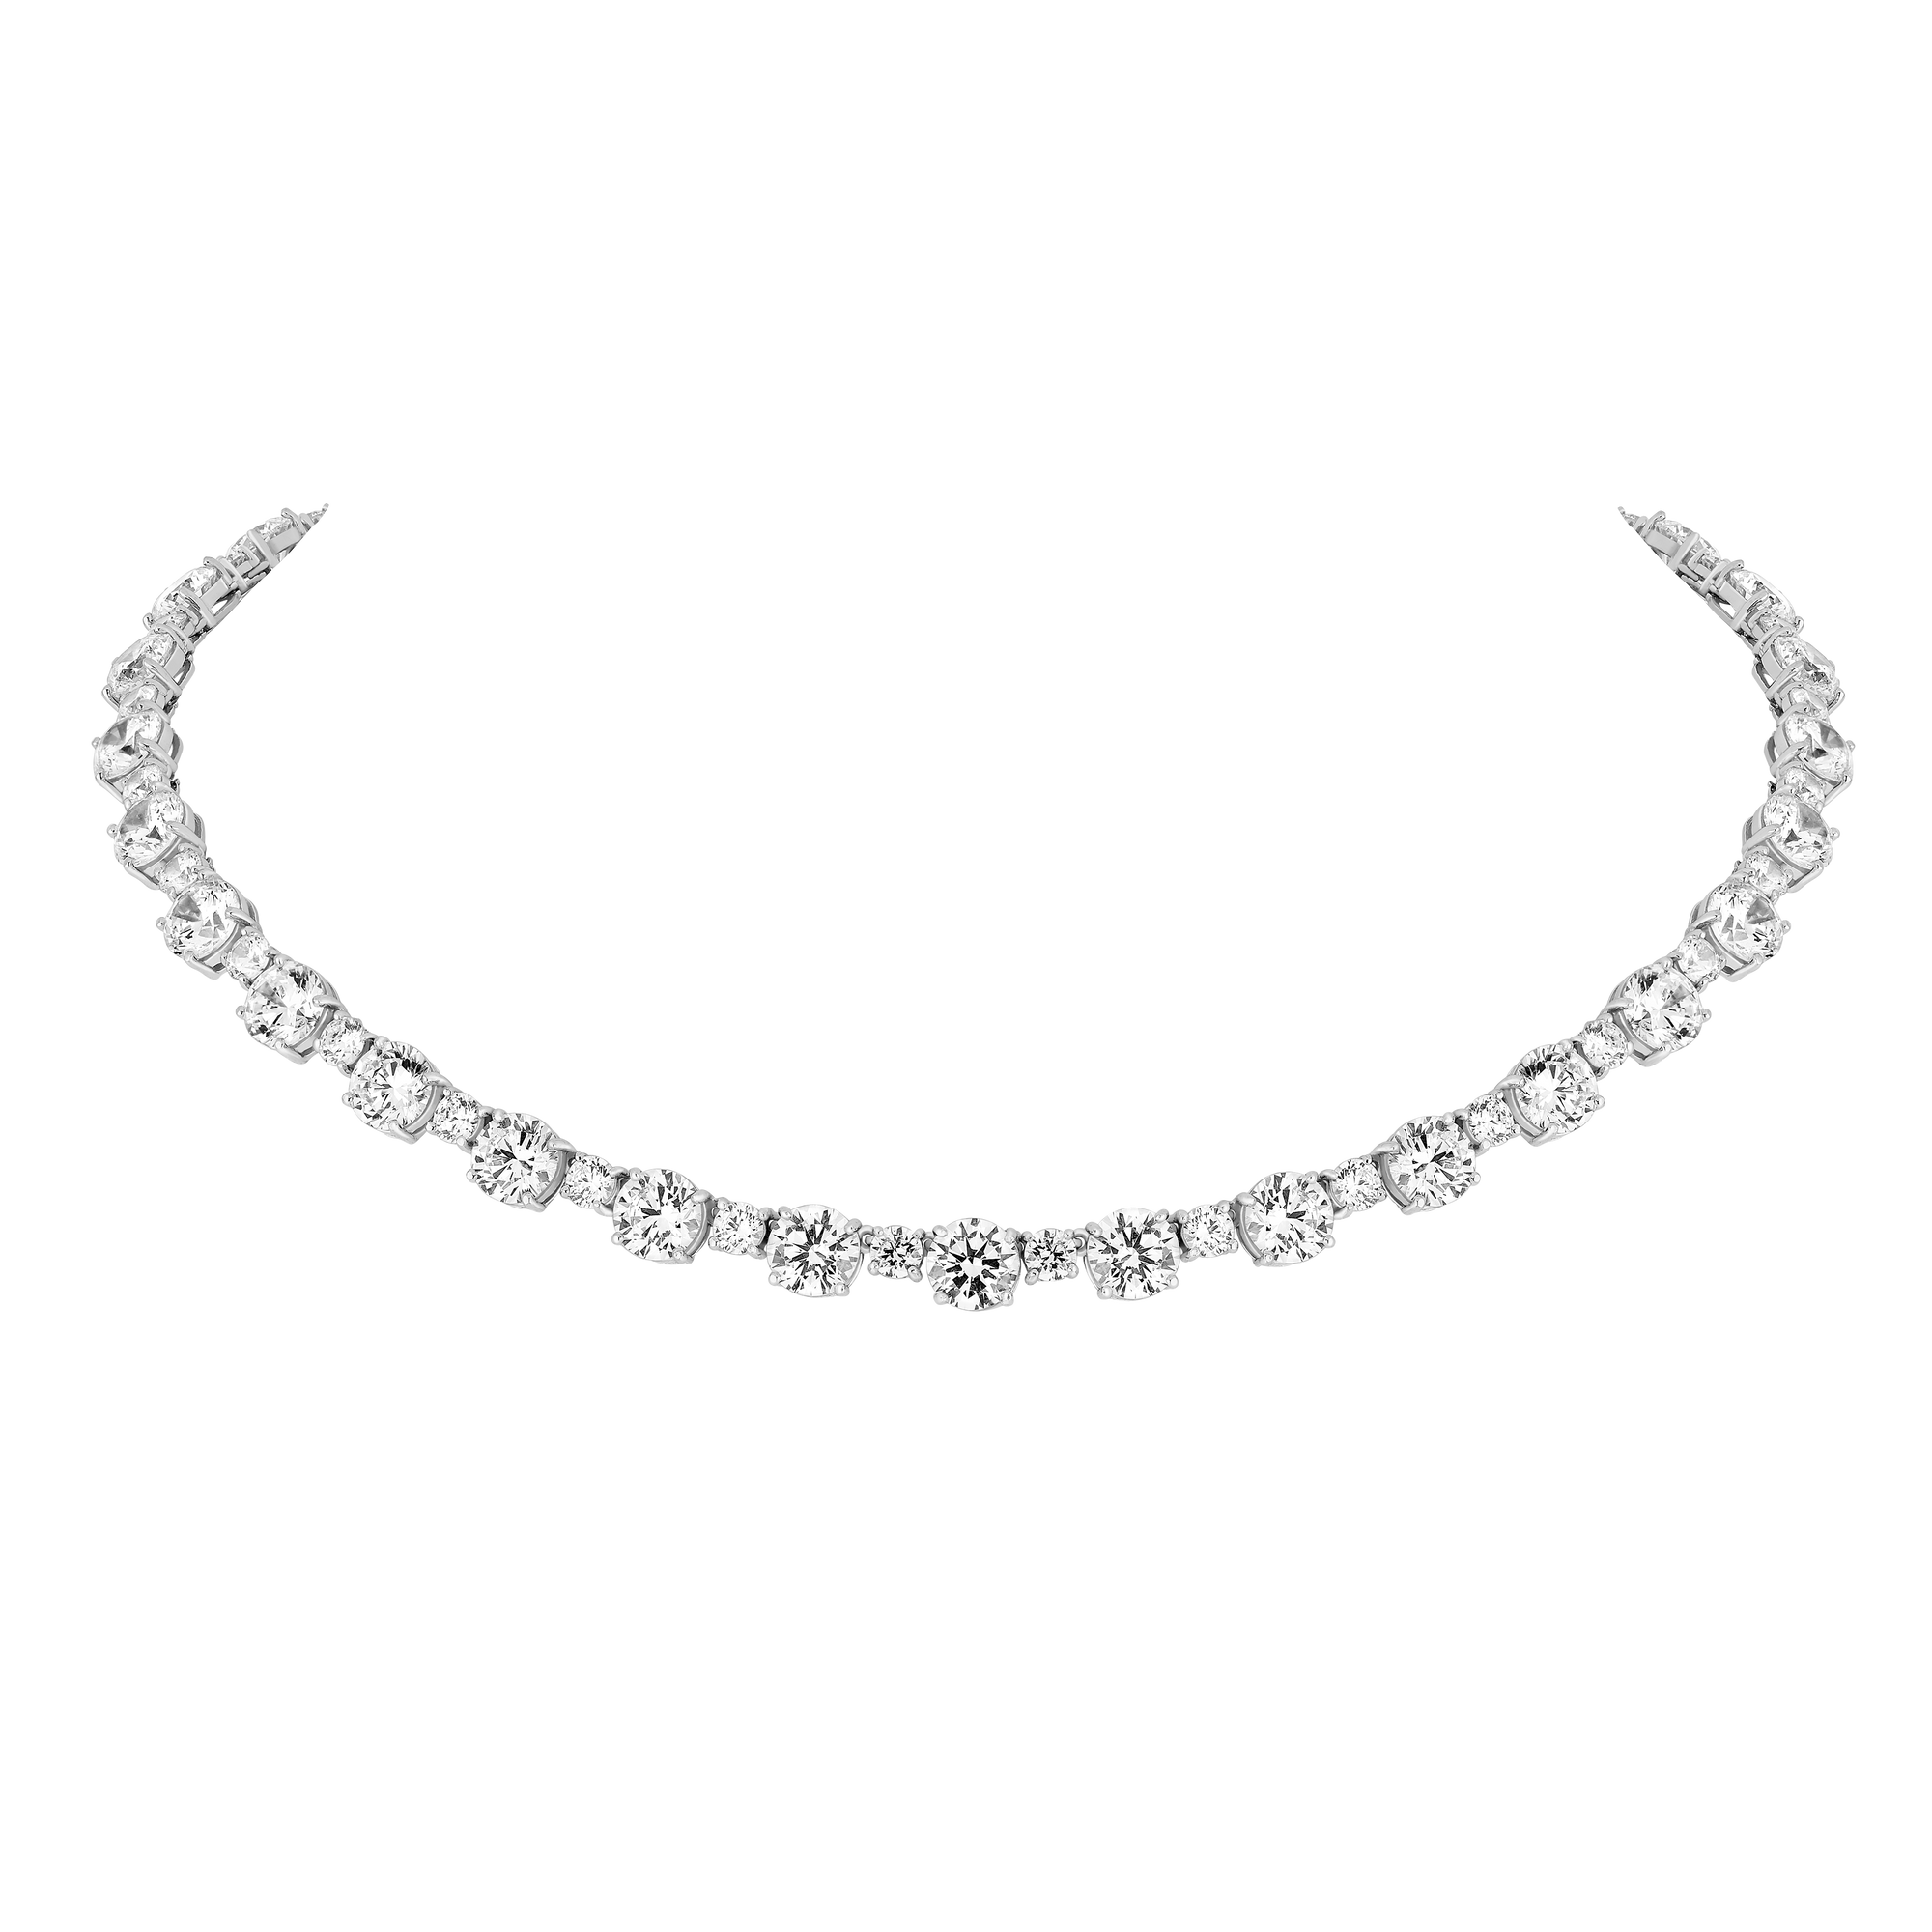 Necklace - Rhodium Silver